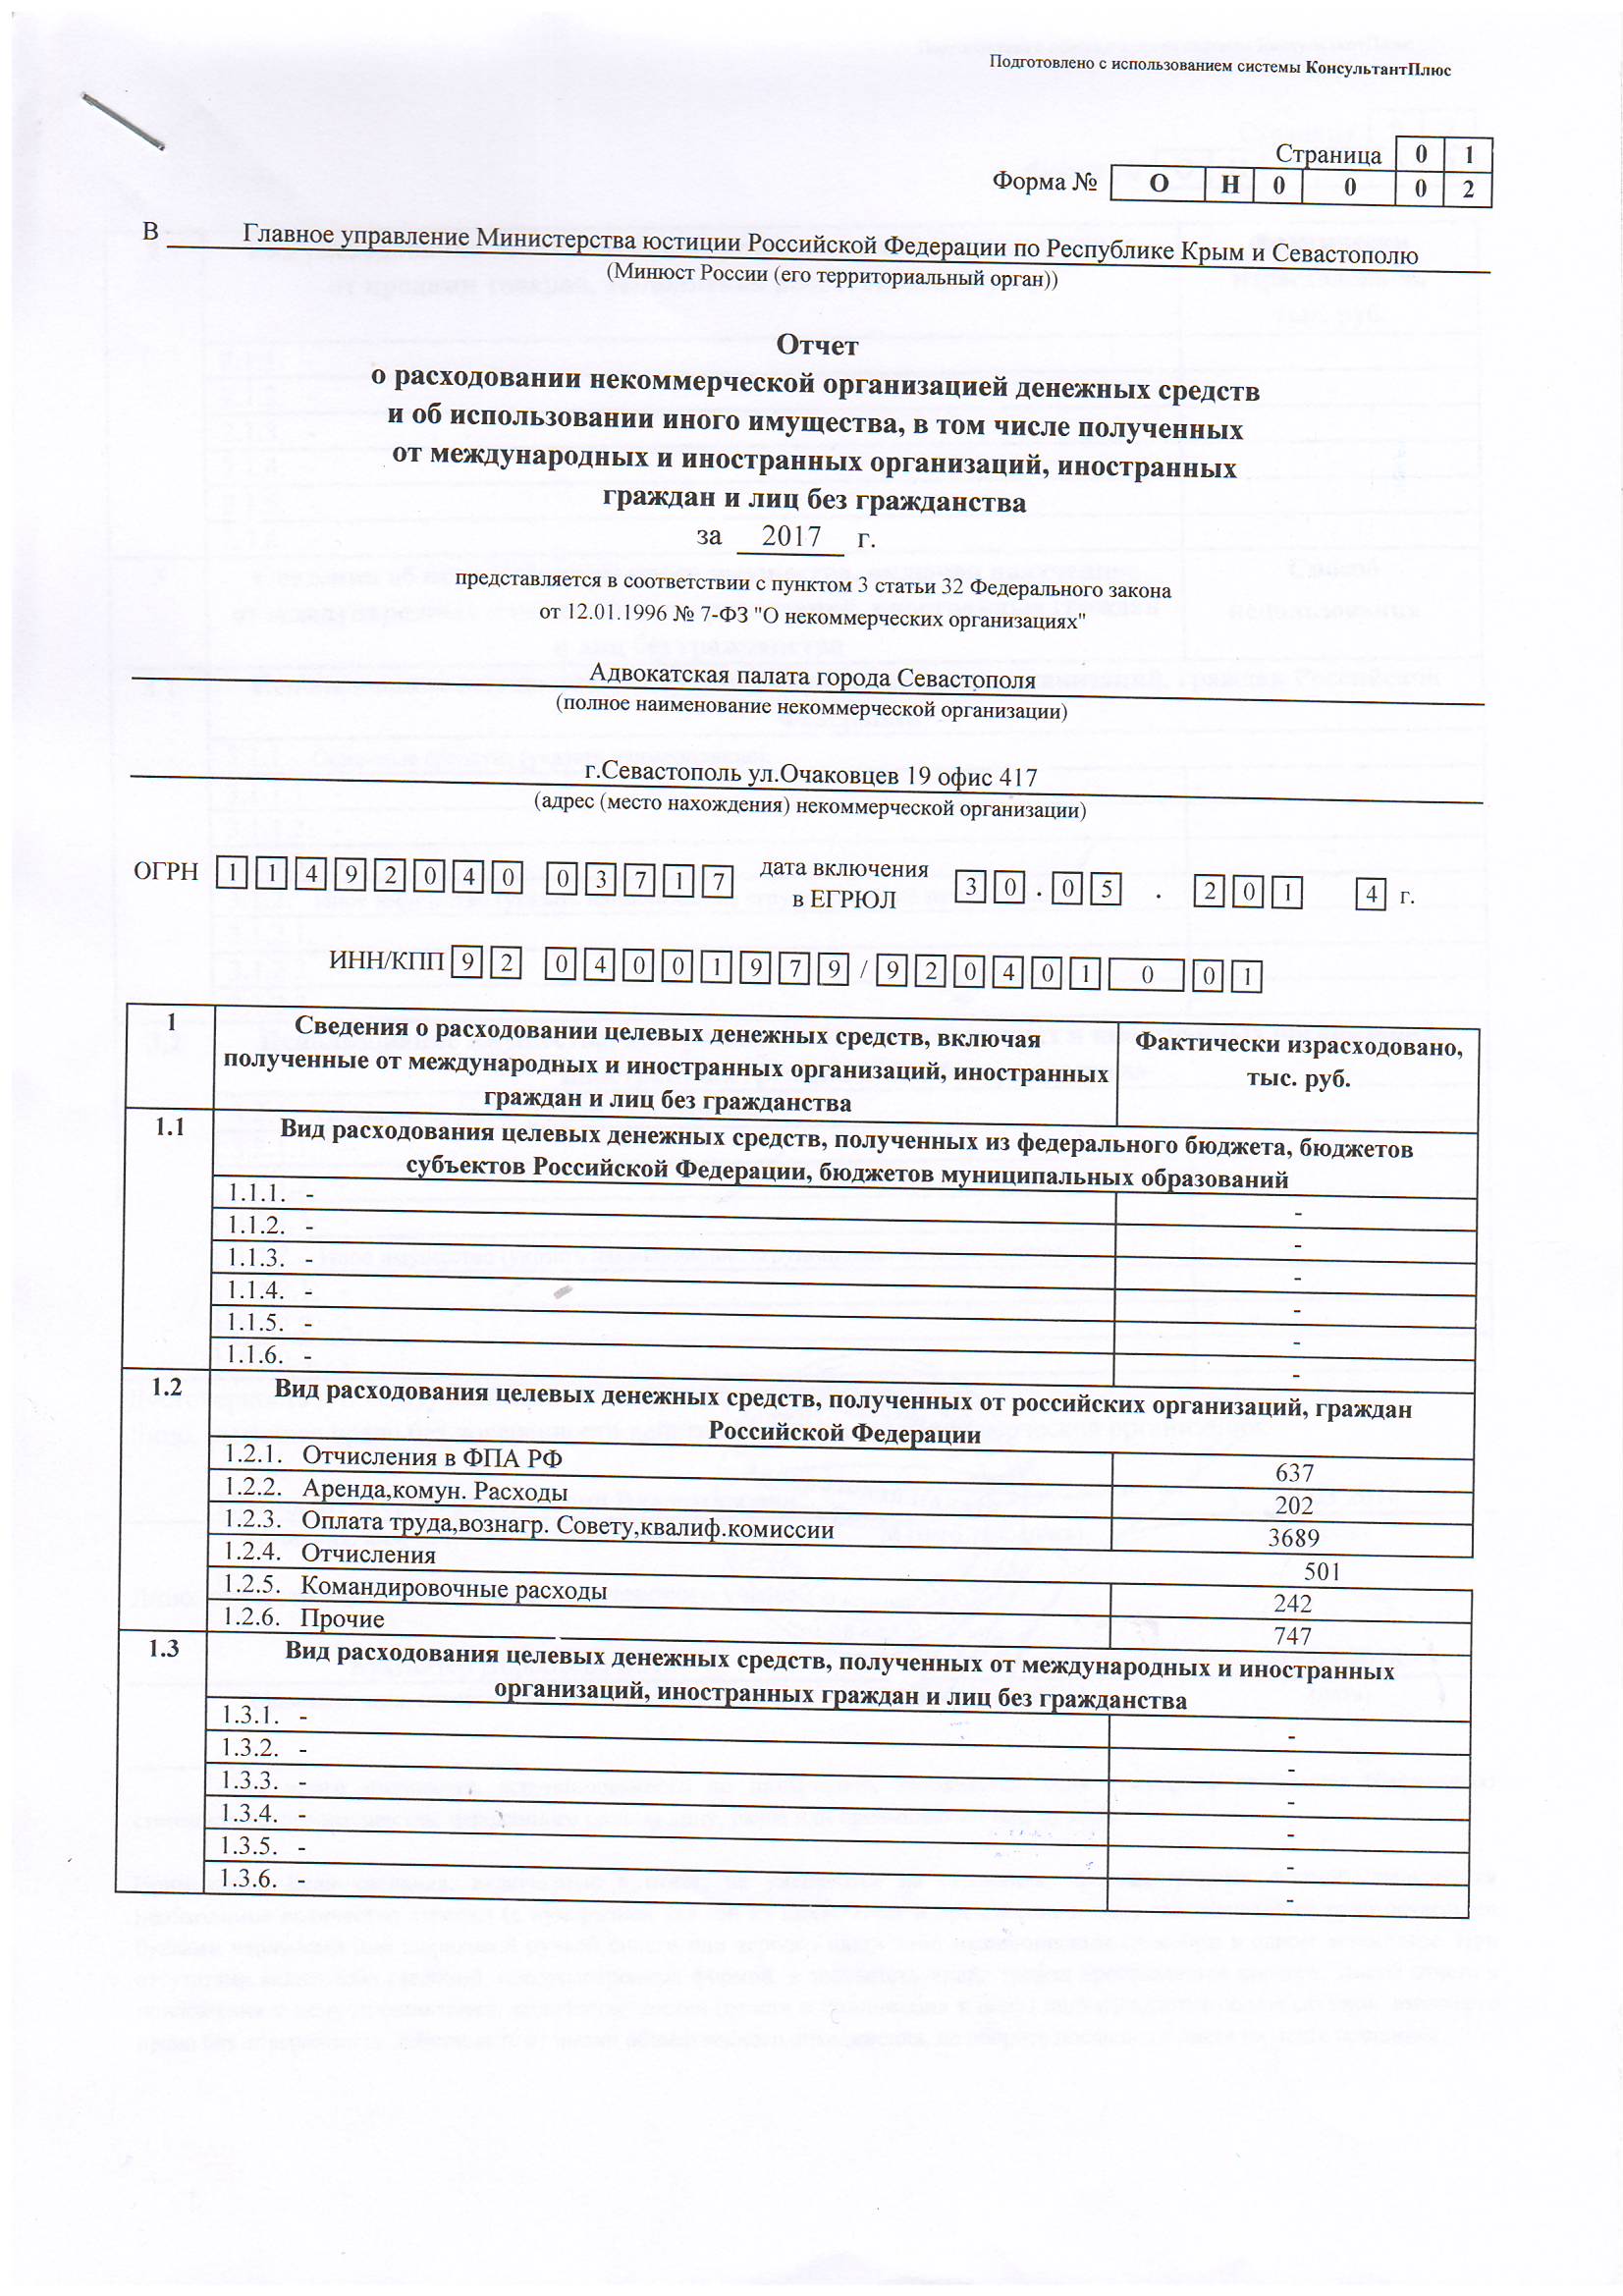 Уведомления, отчеты Адвокатской Палаты в Минюст за 2017 год